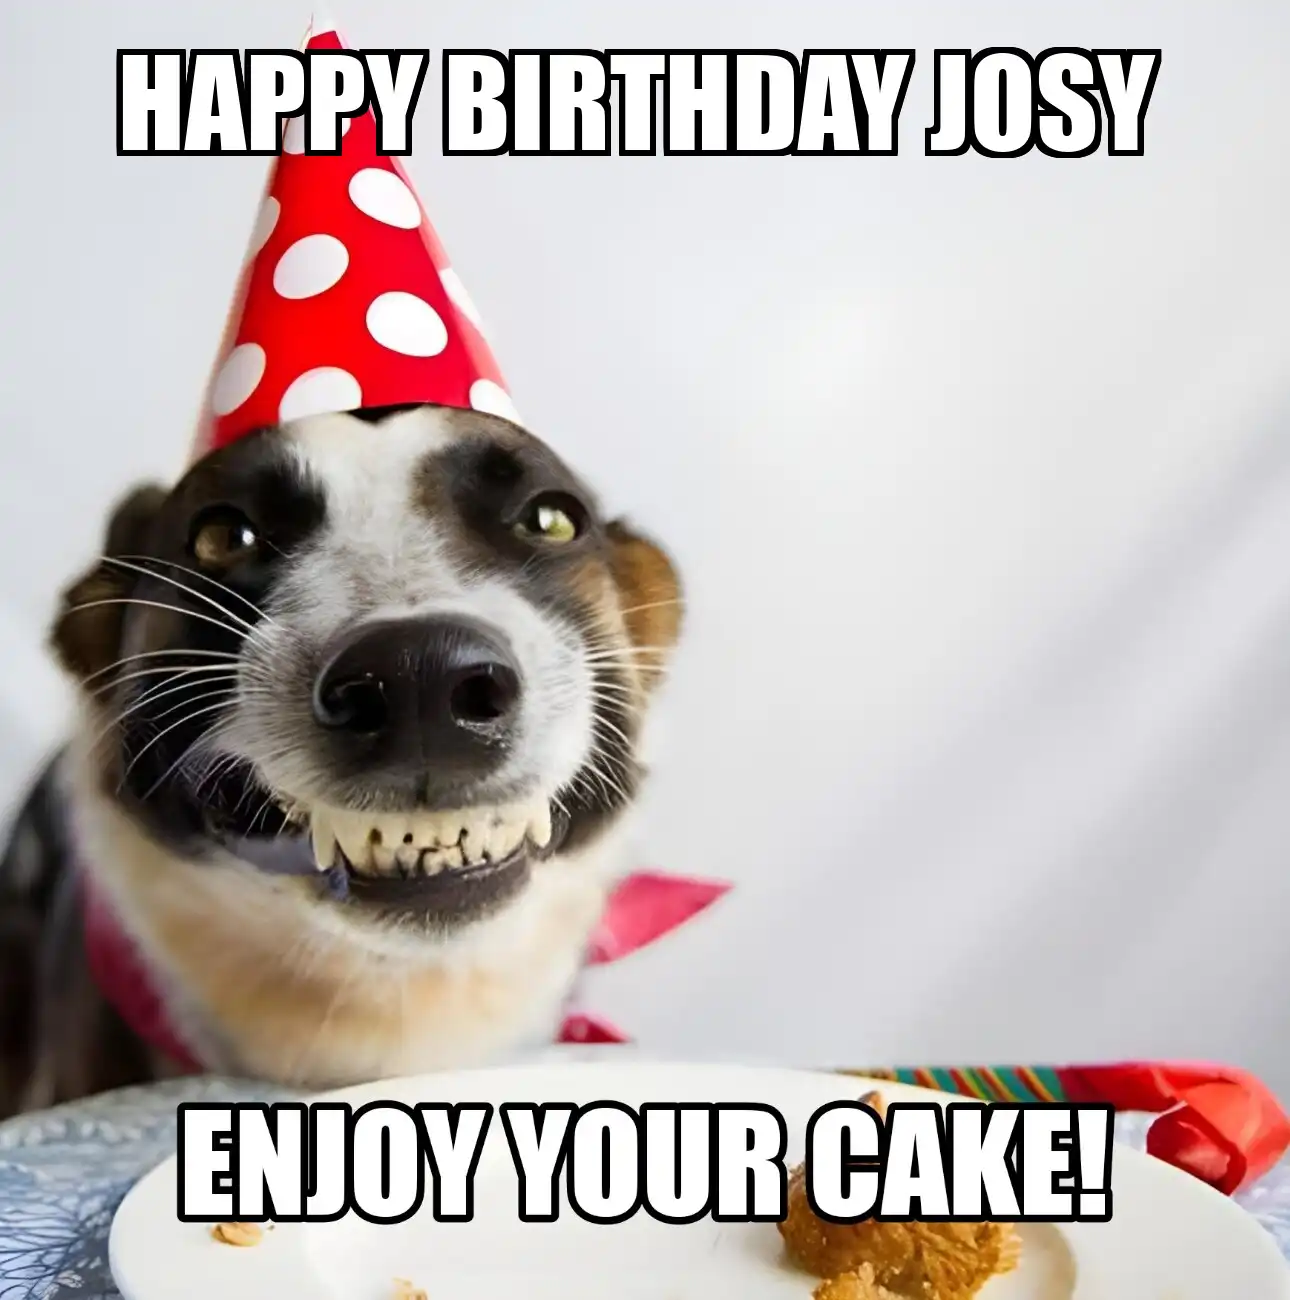 Happy Birthday Josy Enjoy Your Cake Dog Meme